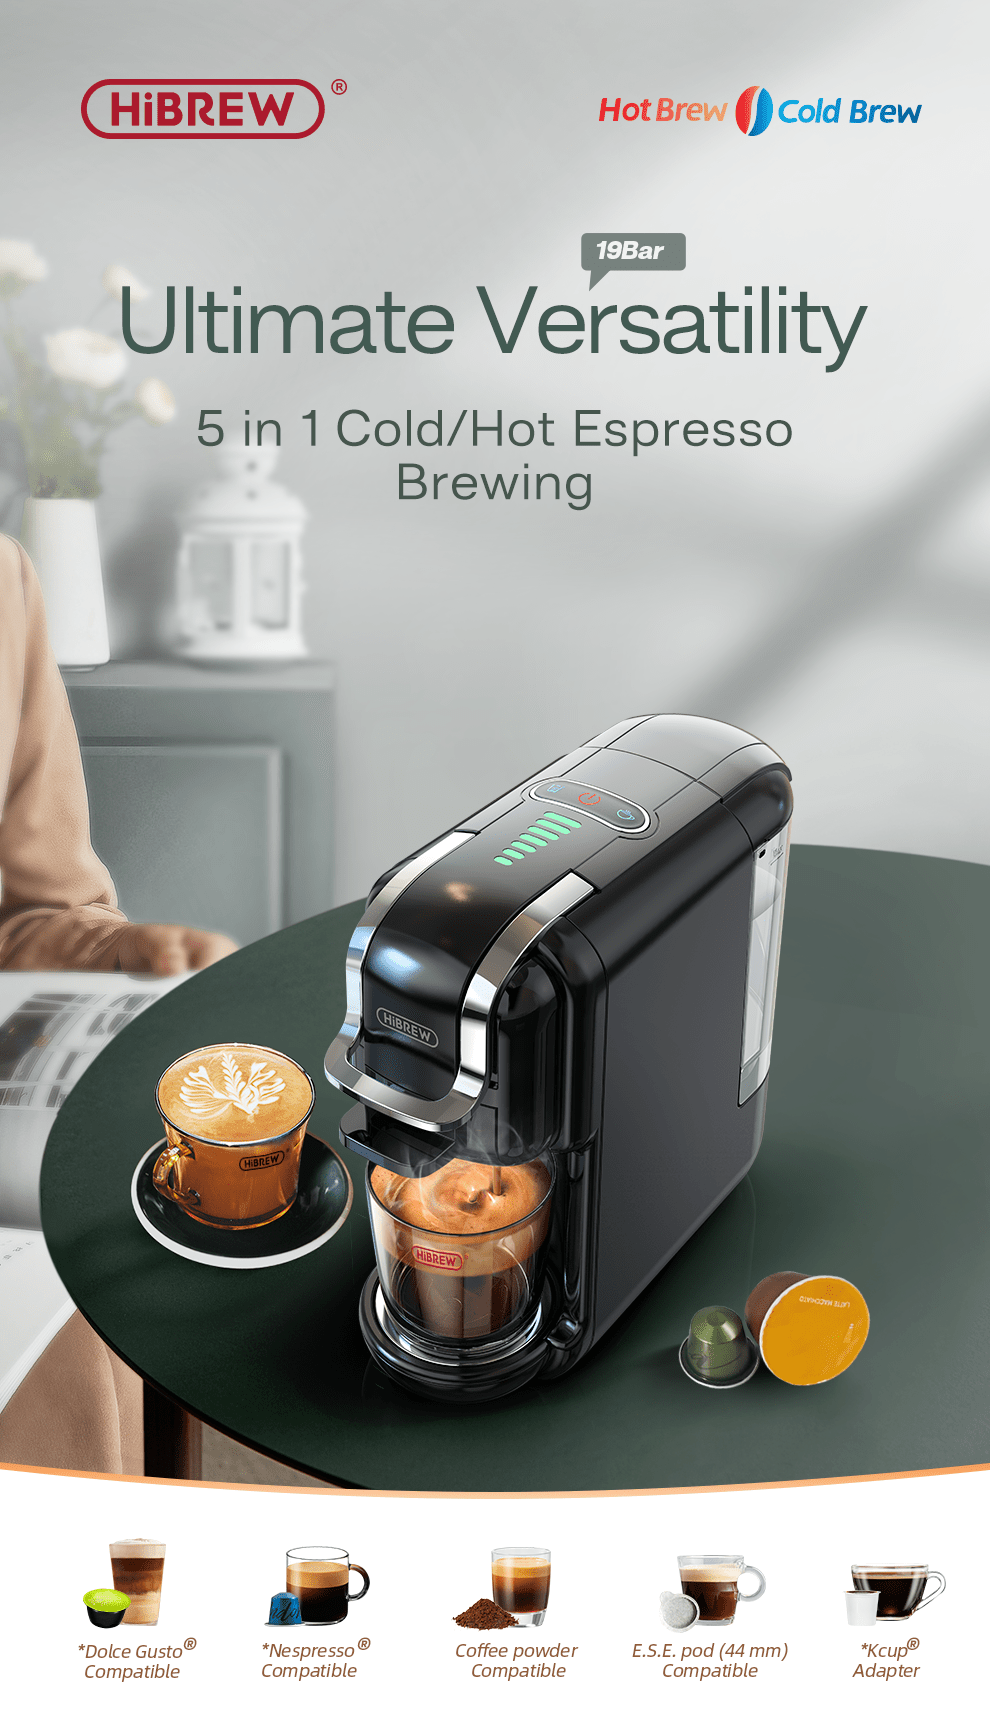 HiBREW-Cafetera caliente/fría 5 en 1, múltiples 19bar Dolce Gusto, cápsula  de leche y Nexpresso